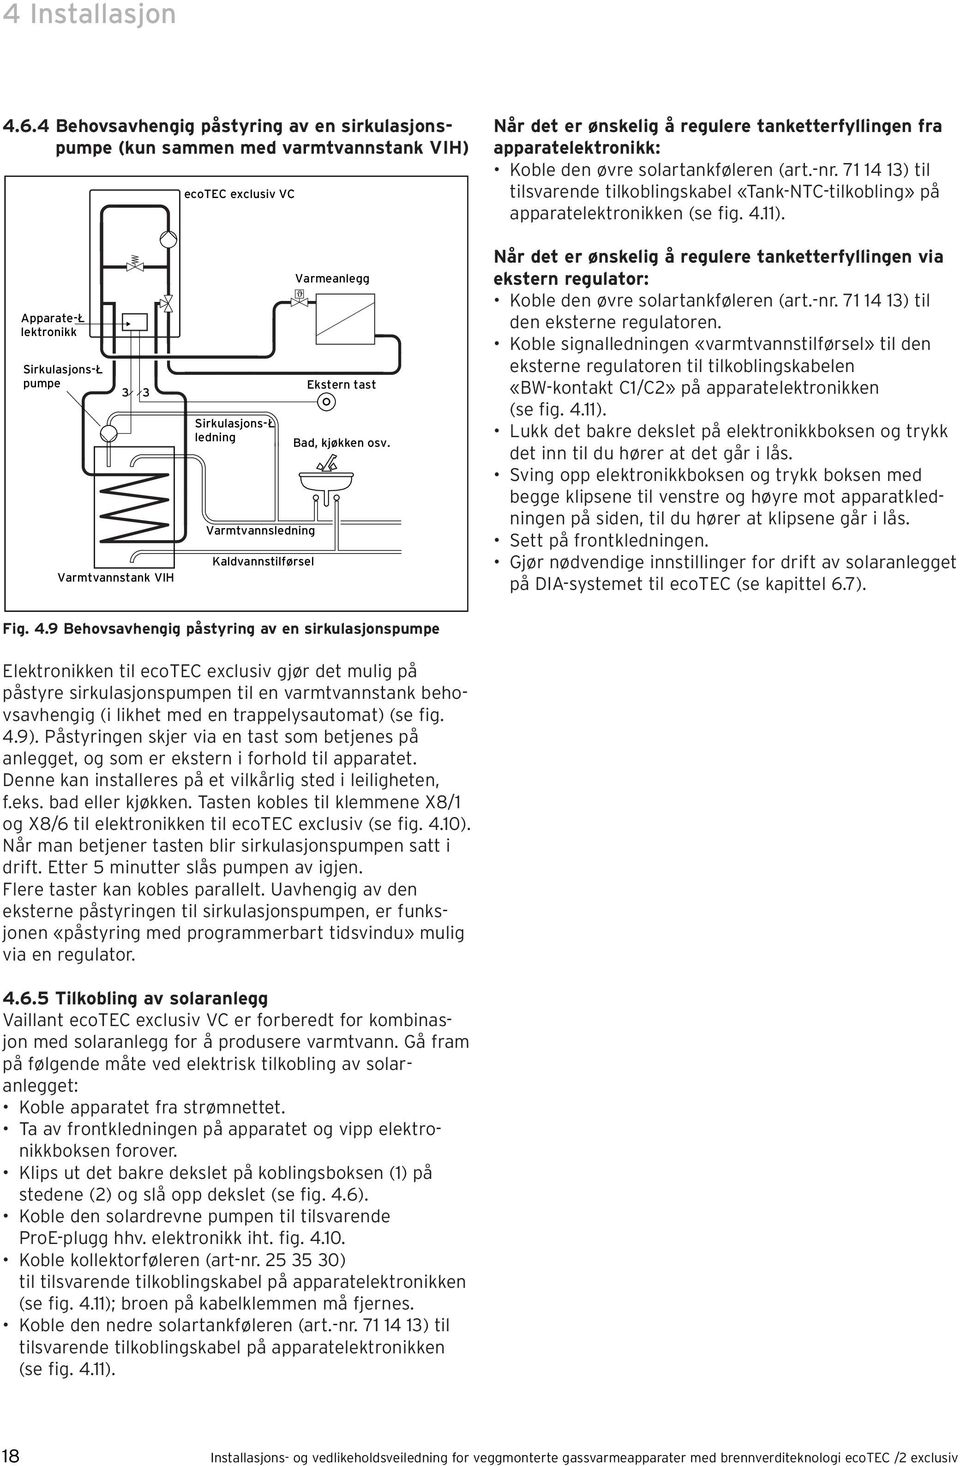 solartankføleren (art.-nr. 71 14 13) til tilsvarende tilkoblingskabel «Tank-NTC-tilkobling» på apparatelektronikken (se fig. 4.11).